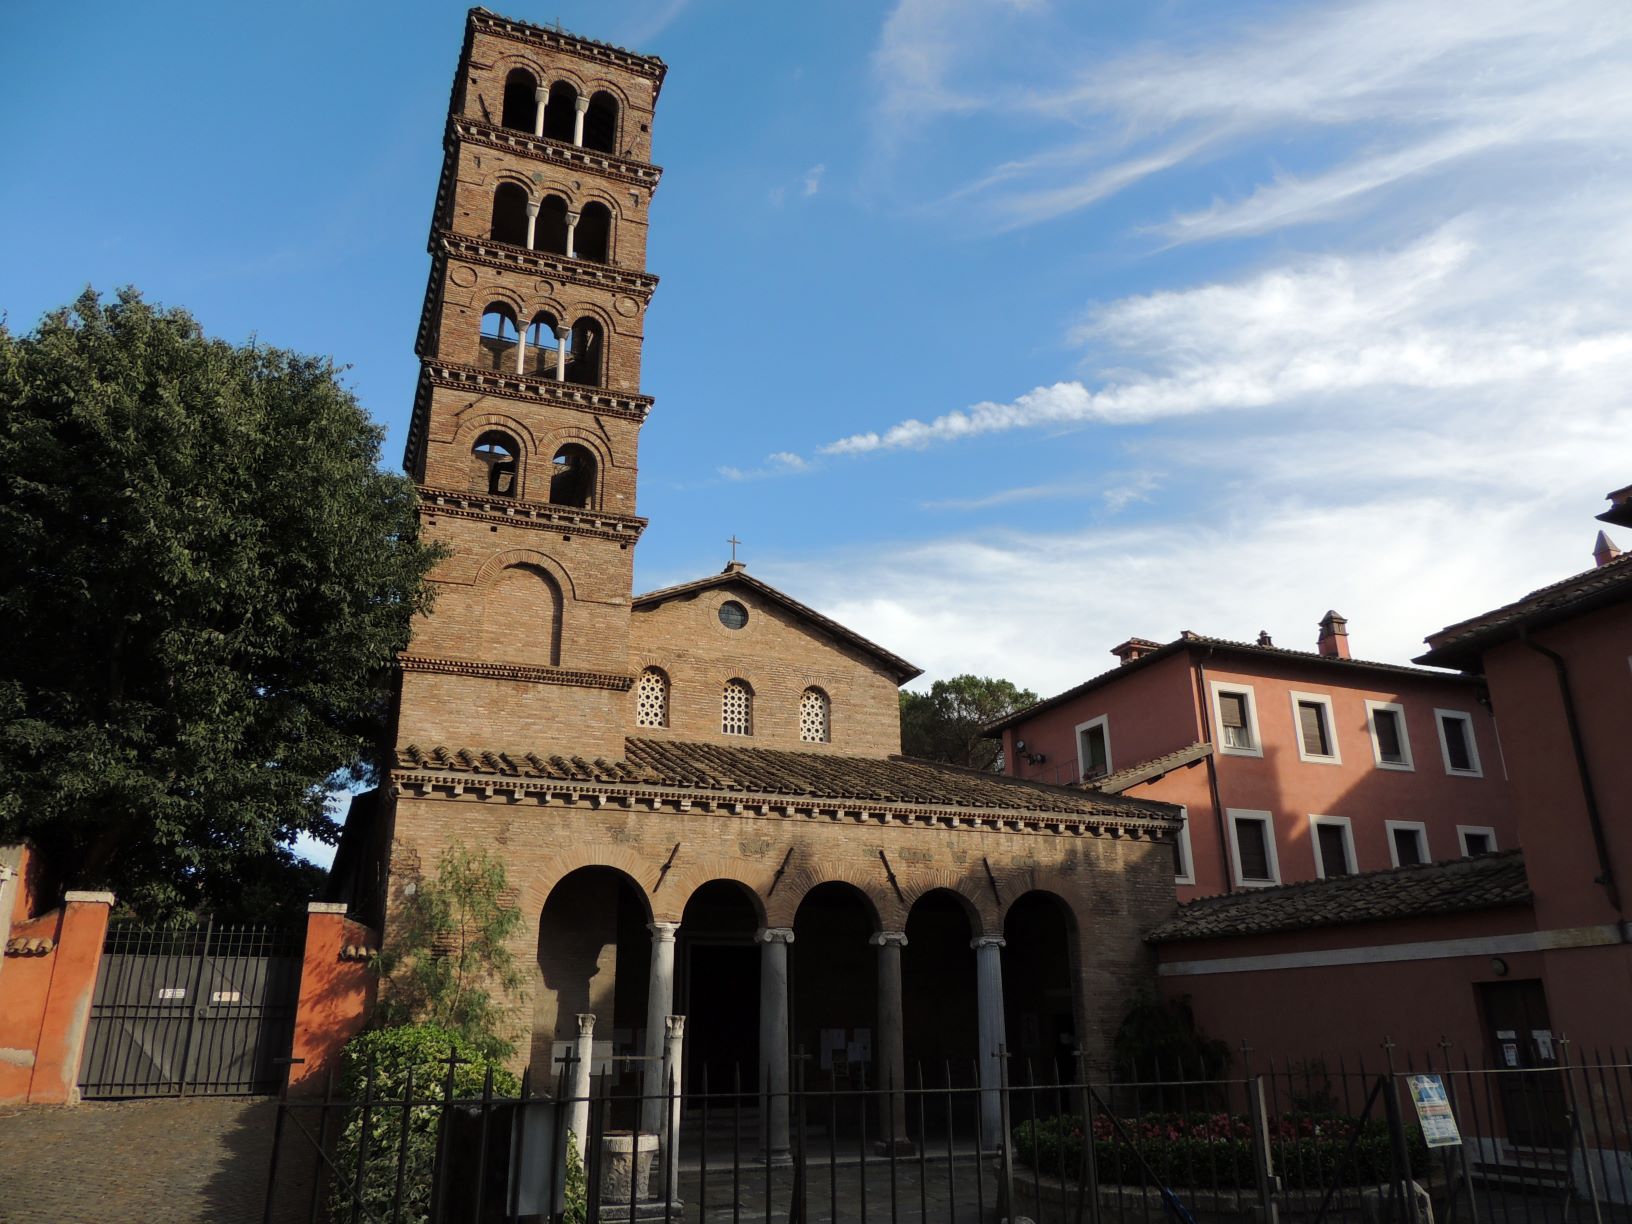 サン・ジョヴァンニ・ア・ポルタ・ラティーナ教会 Chiesa di S.Giovanni a Porta Latina |  EDICOLANTEのイタリア小さな可愛い街の旅行記とコラム